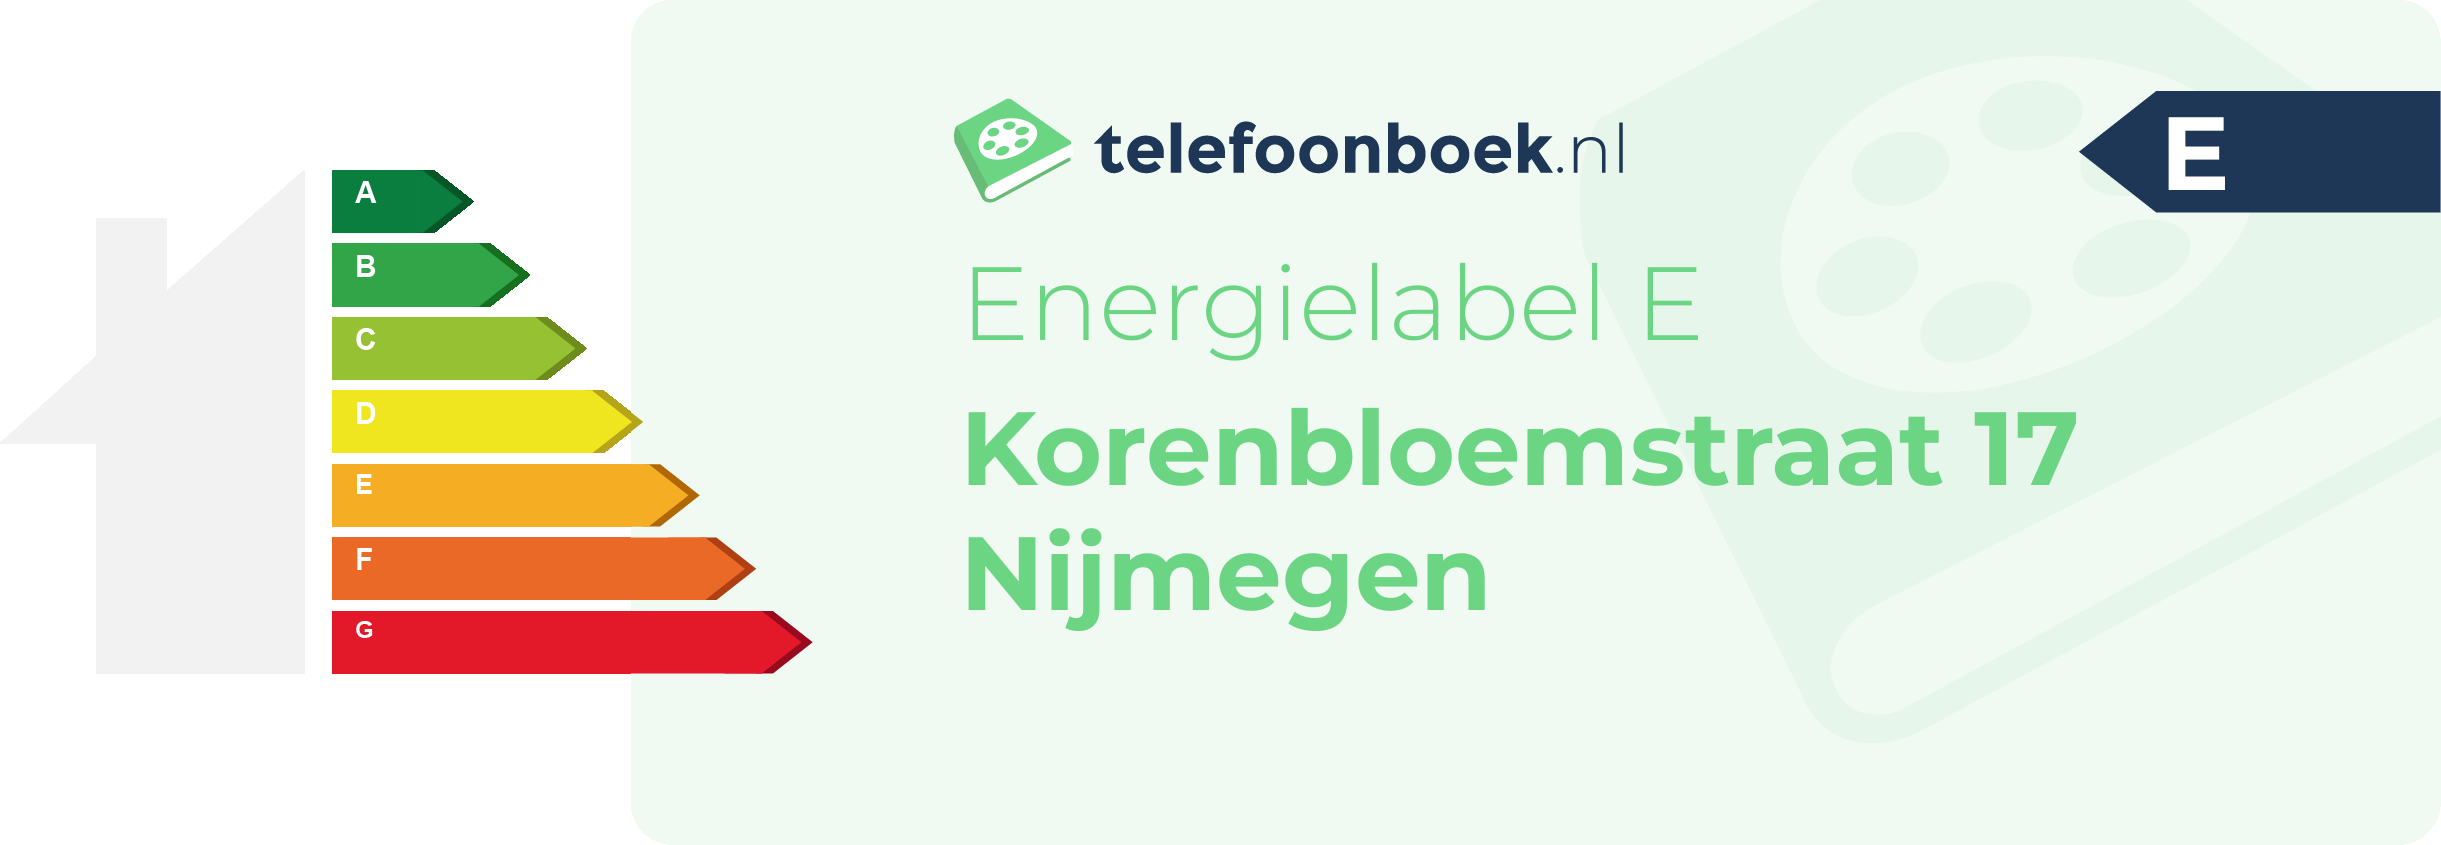 Energielabel Korenbloemstraat 17 Nijmegen